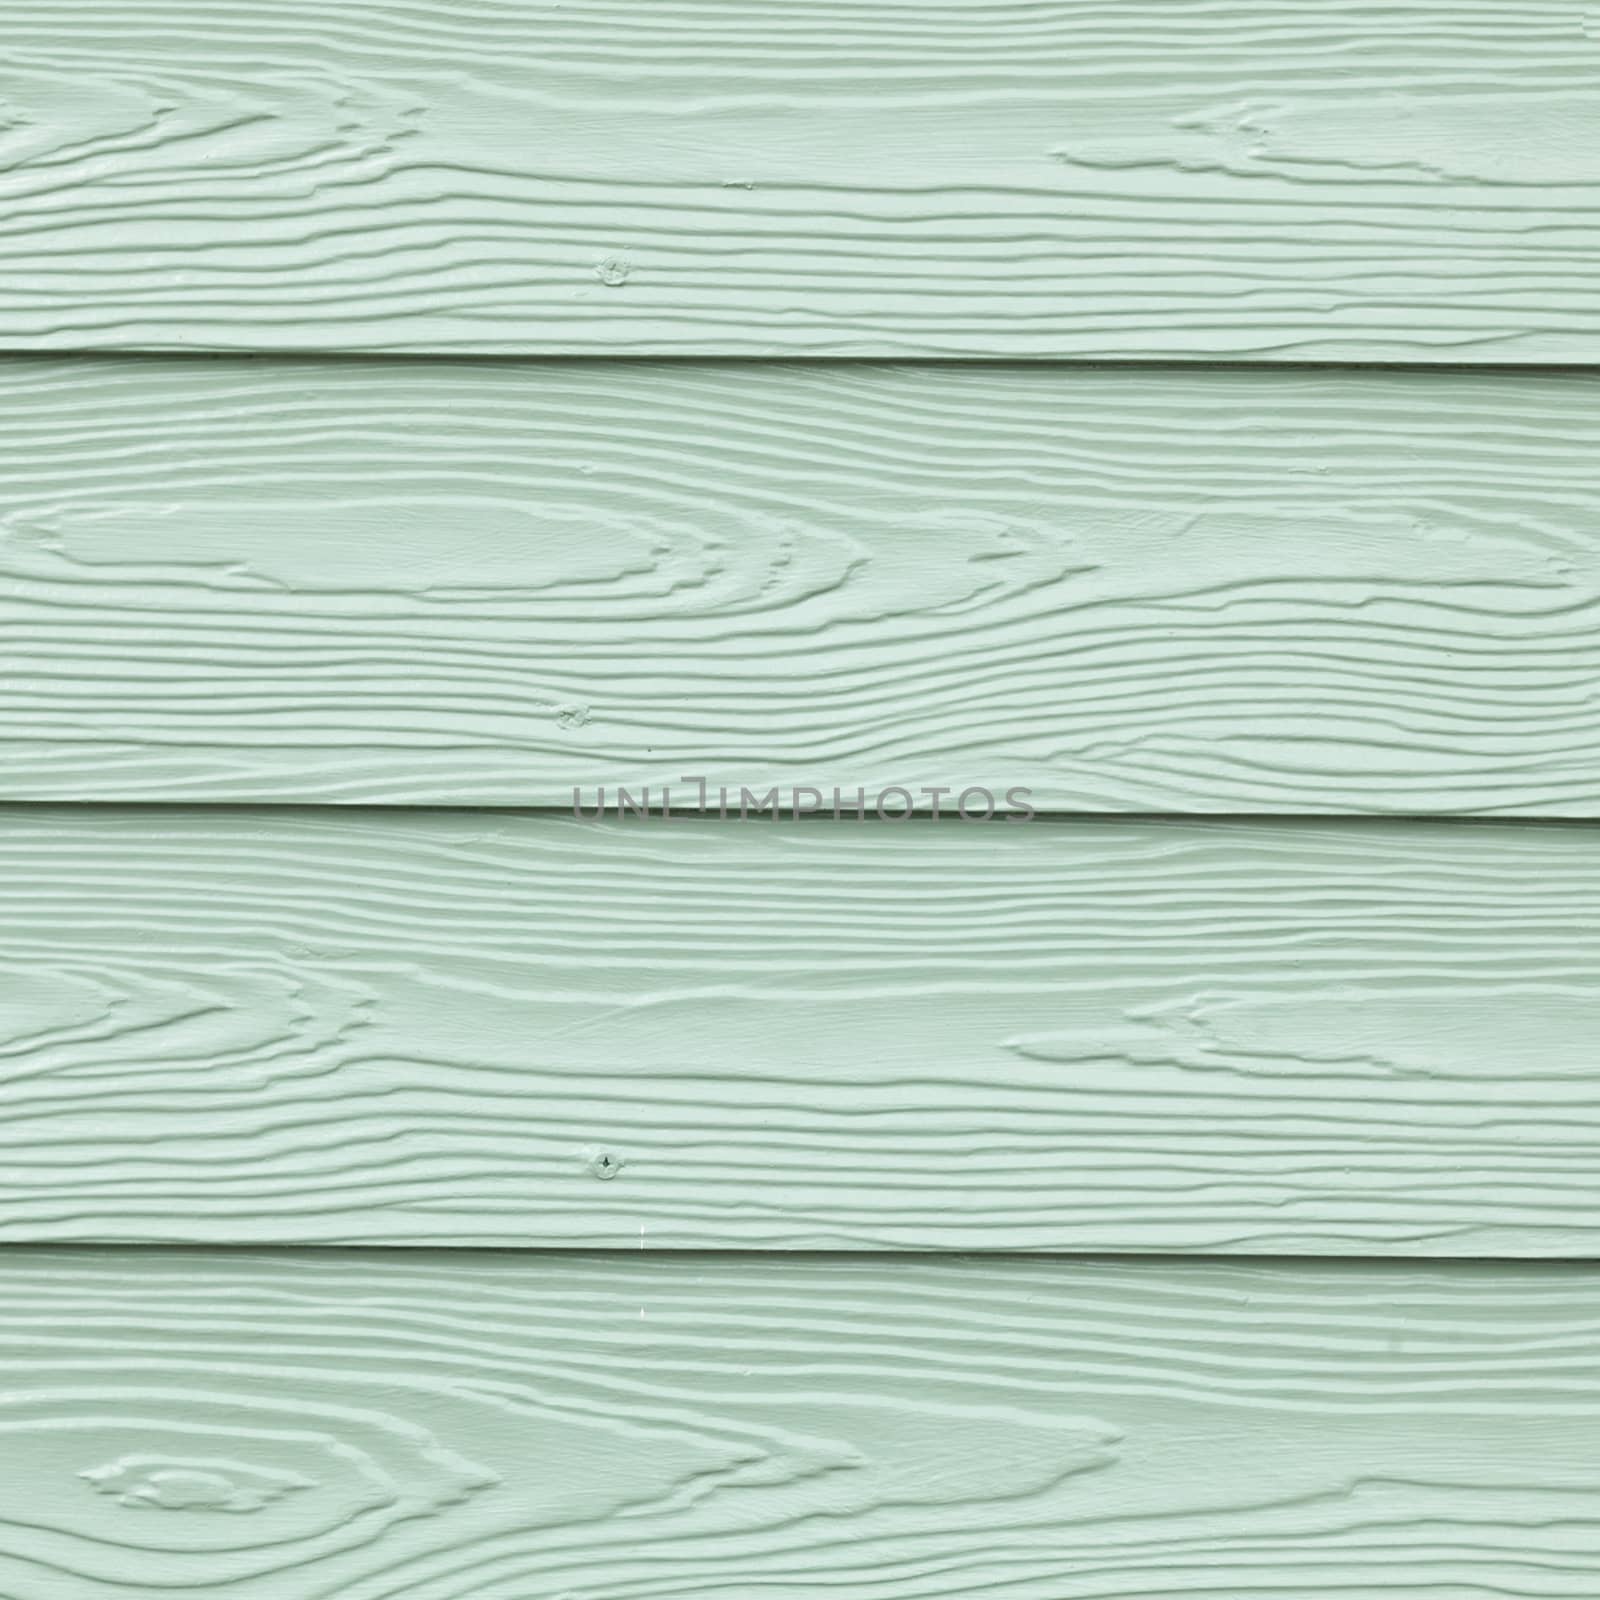 Wall is wood. Green wall of floor, wall trim.